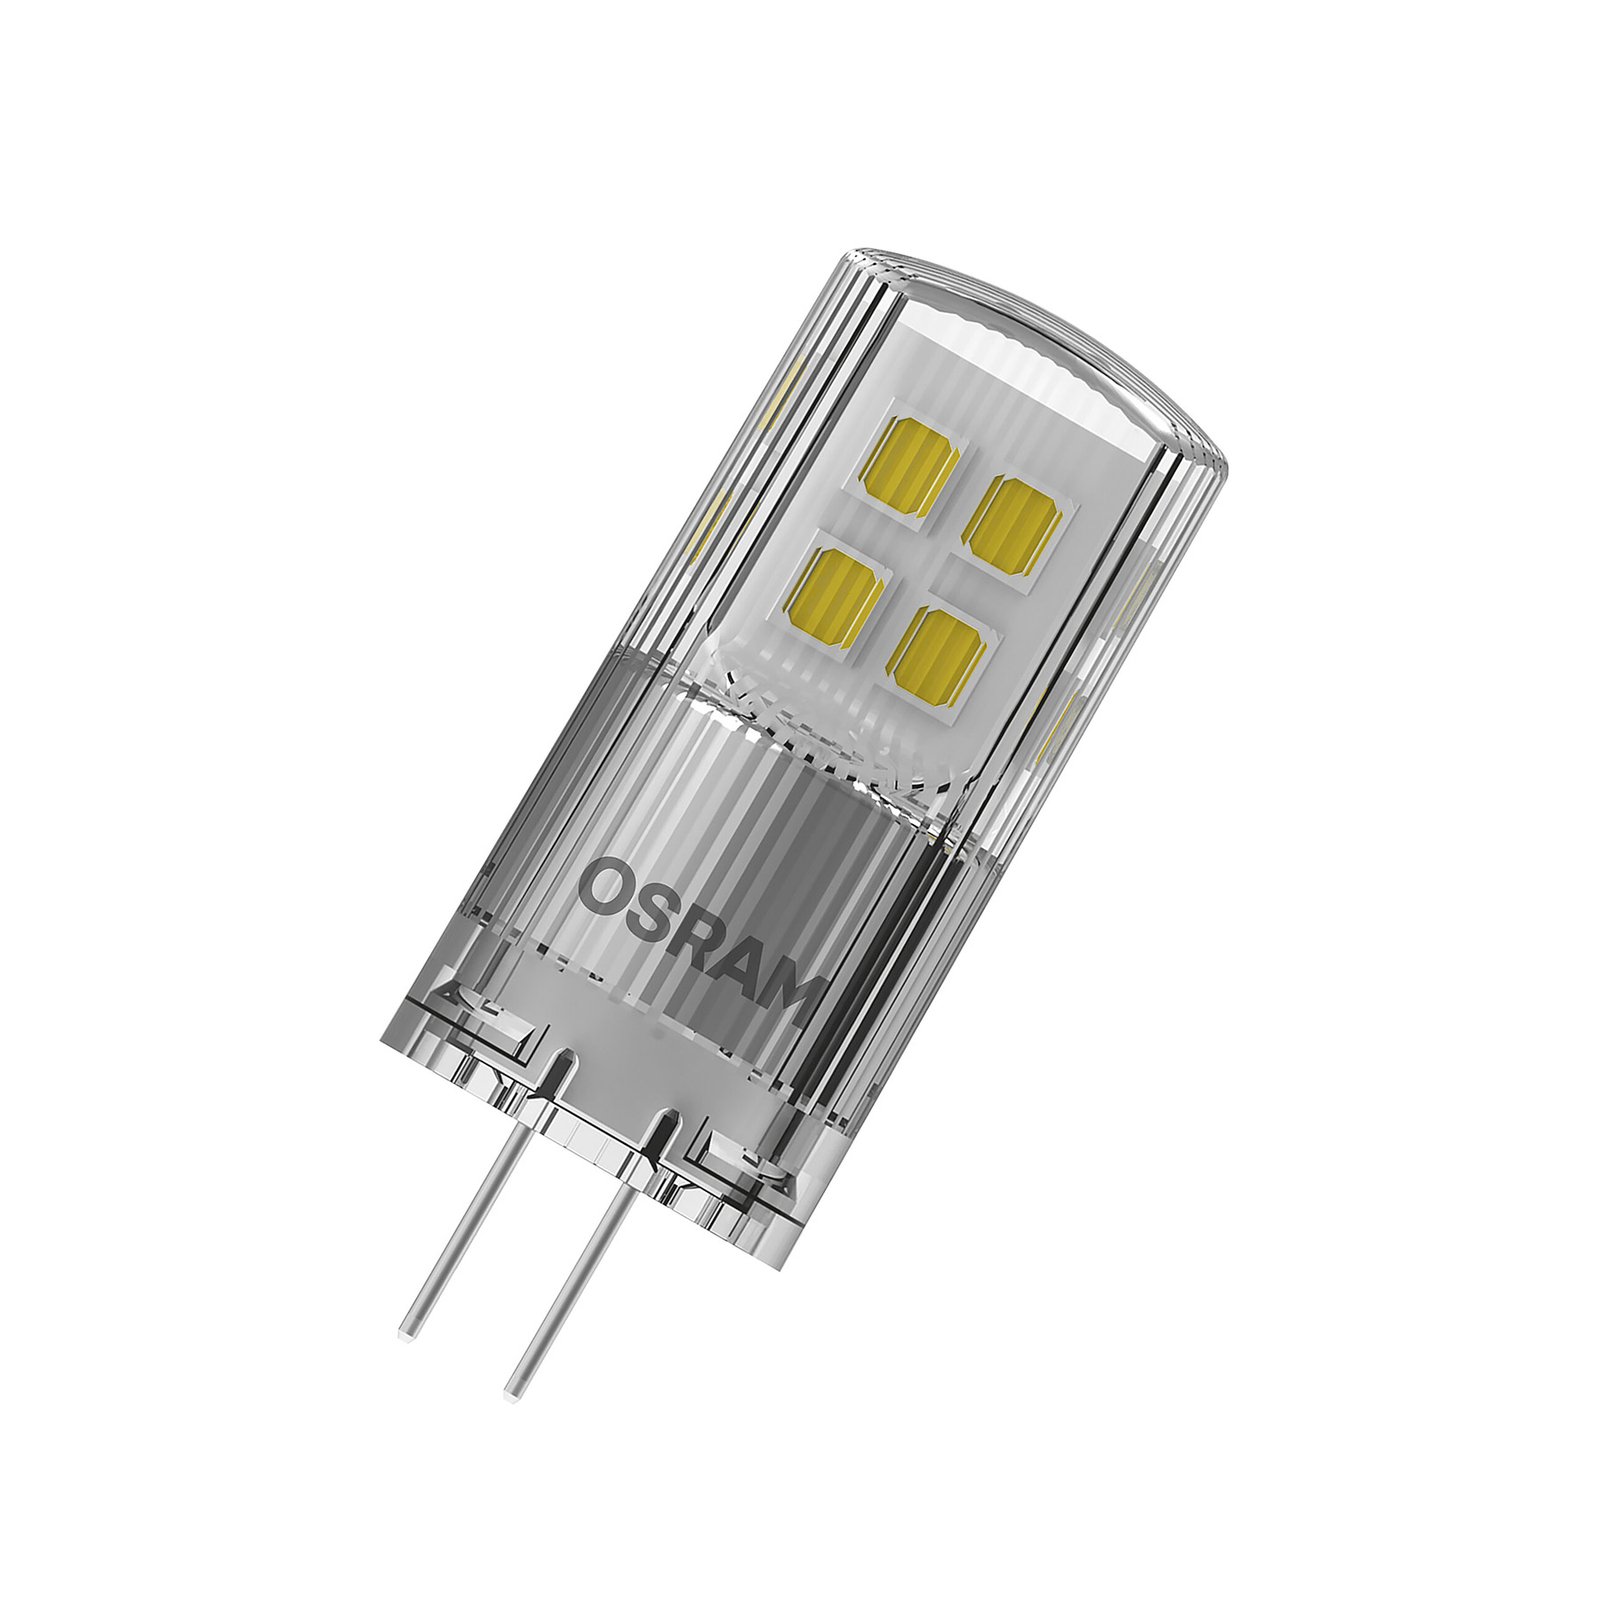 OSRAM PIN 12V LED bi-pin G4 2W 200lm atenuable